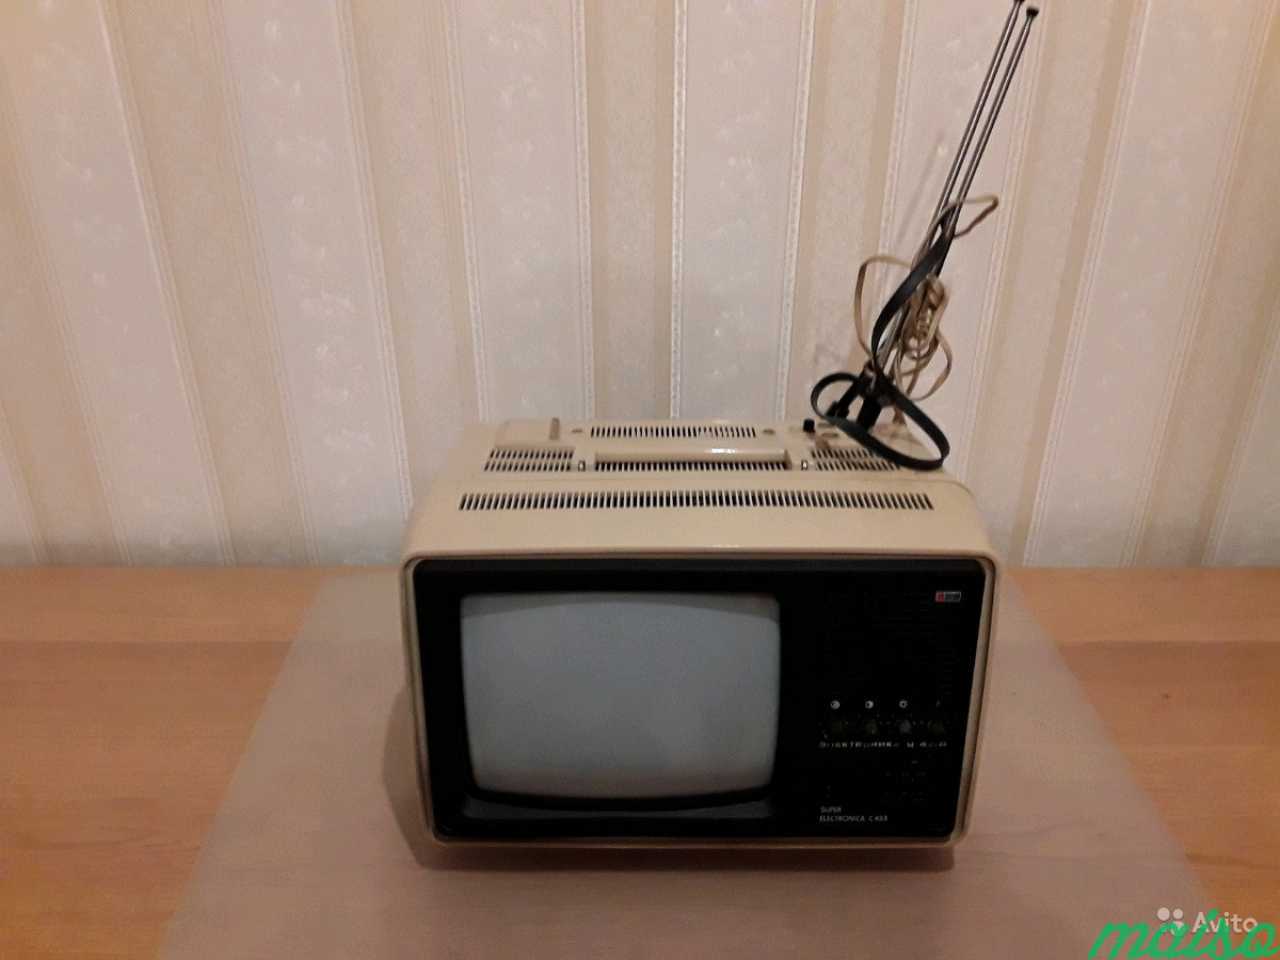 Телевизор цветной переносной Электроника Ц-431 Д 1 в Санкт-Петербурге. Фото 5